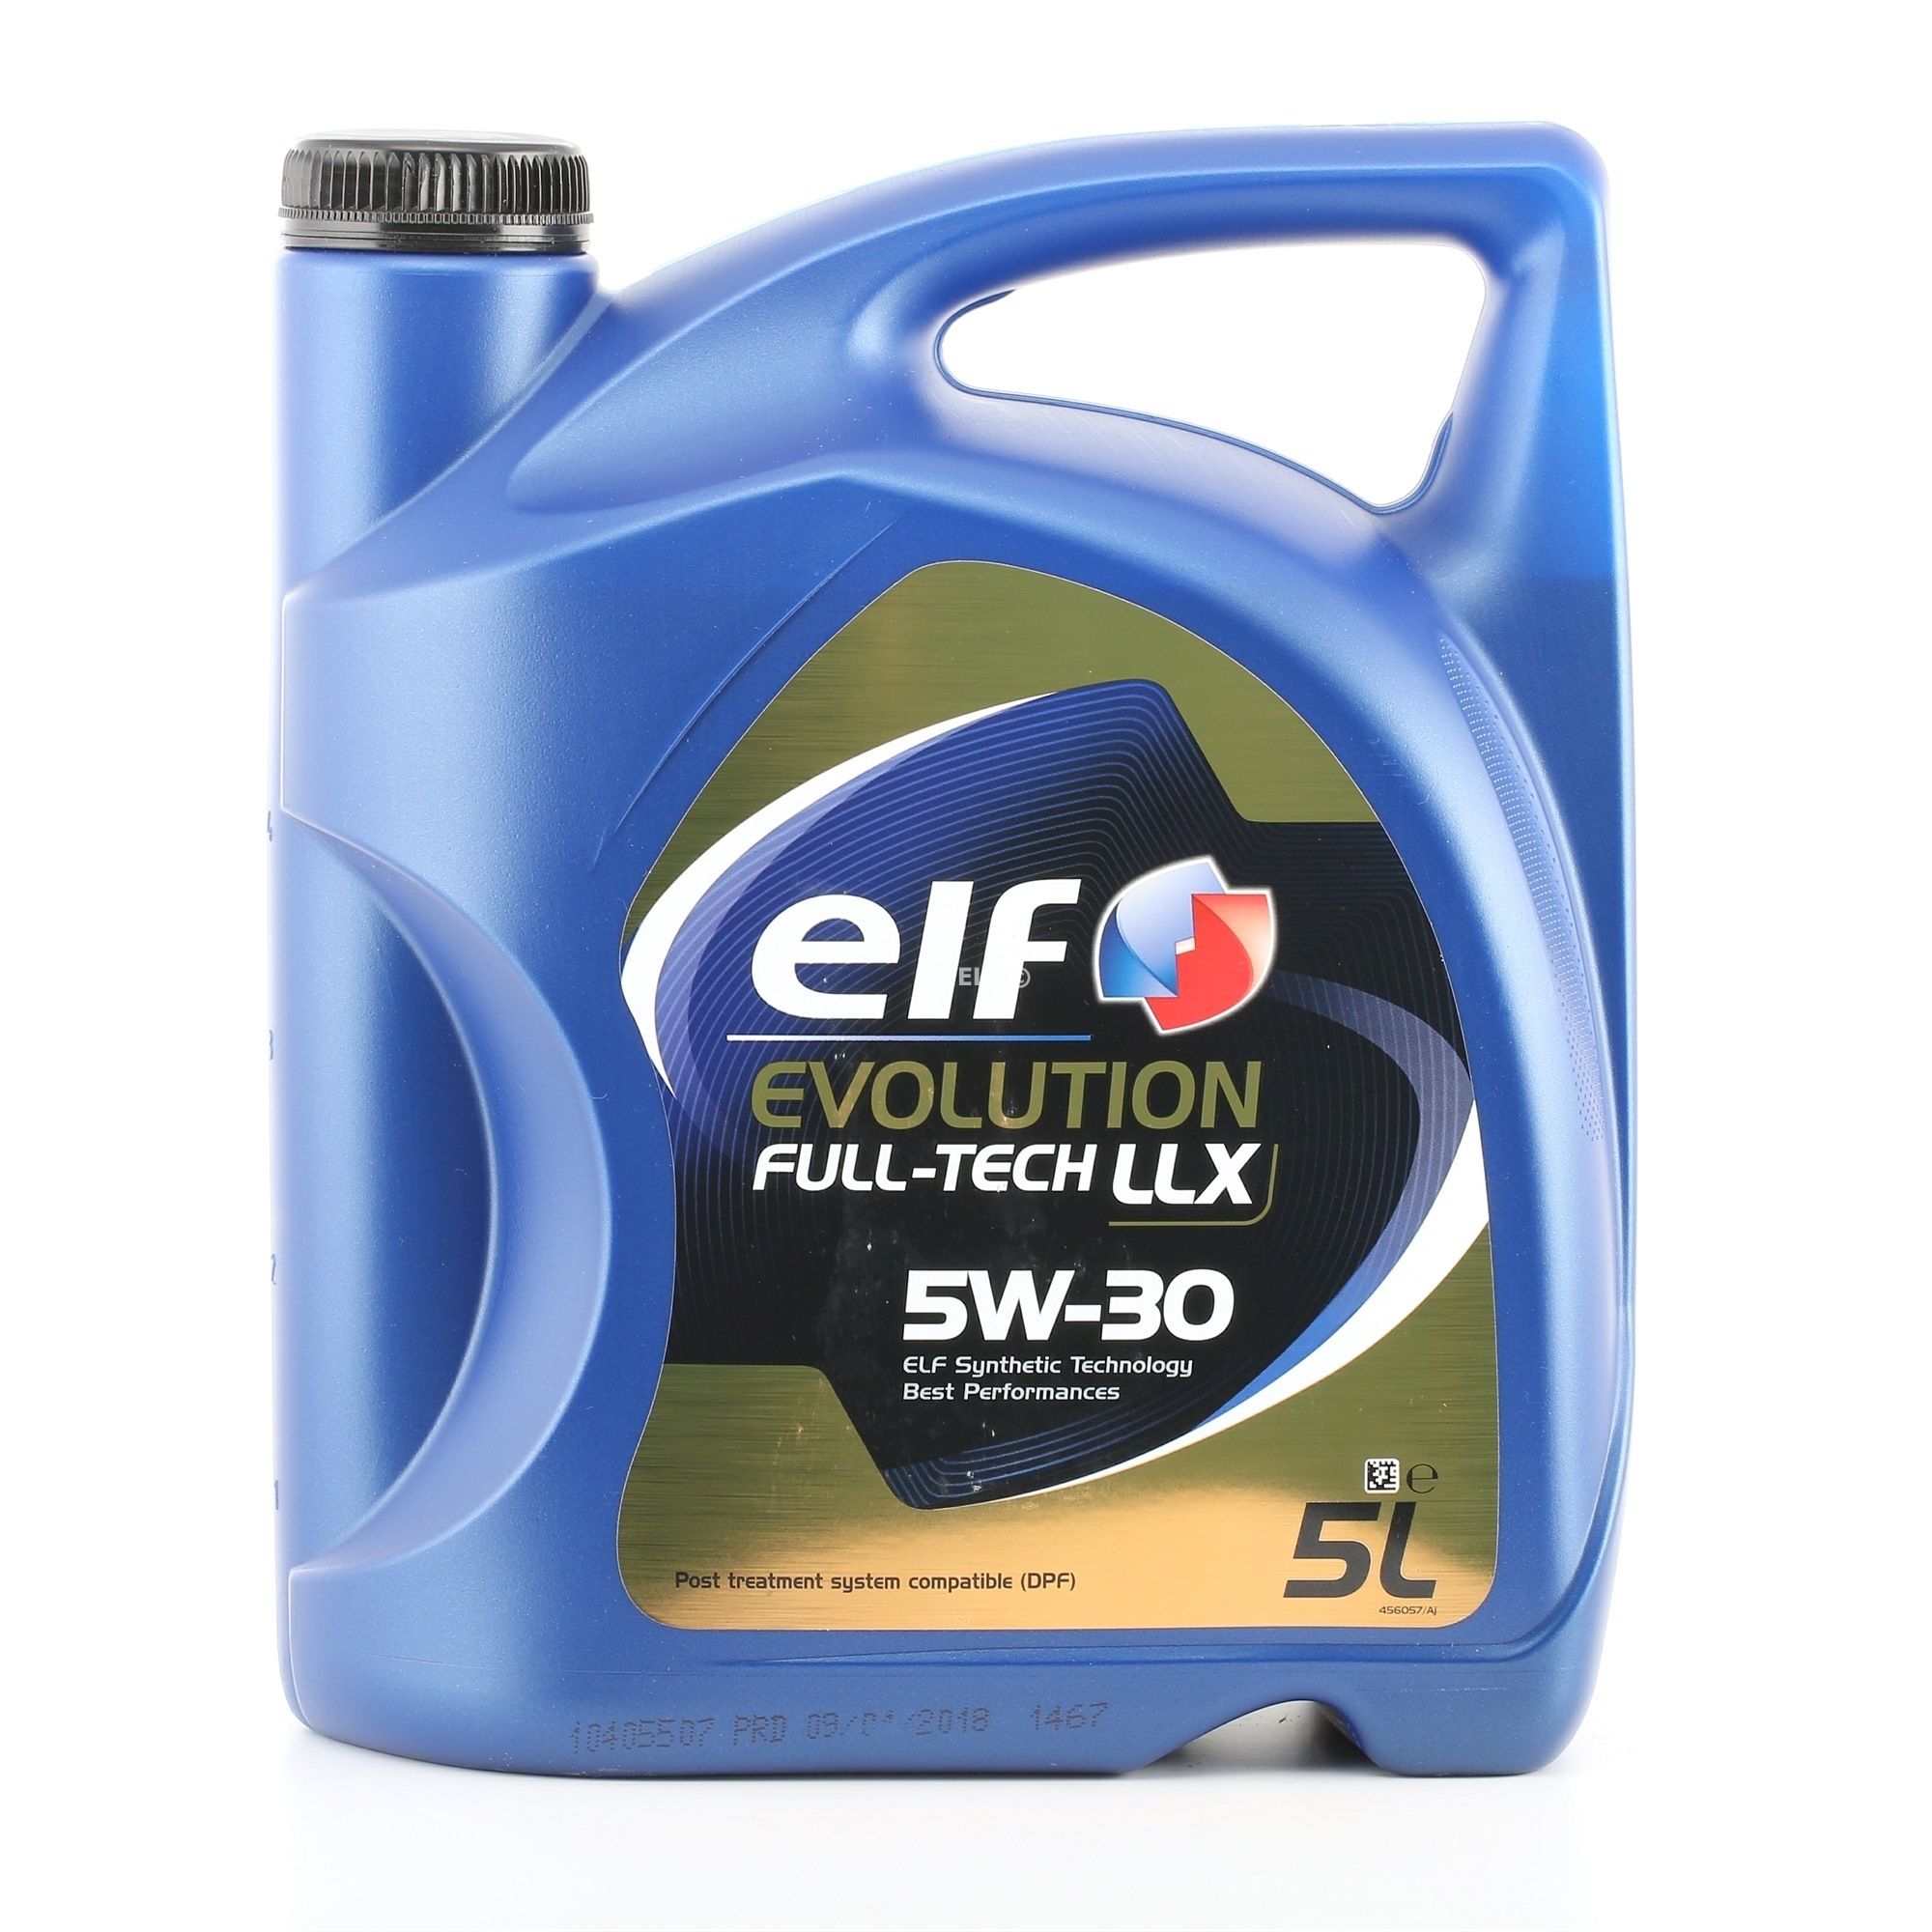 ELF Evolution, Full-Tech LLX 2194890 Olie 5W-30, 5L